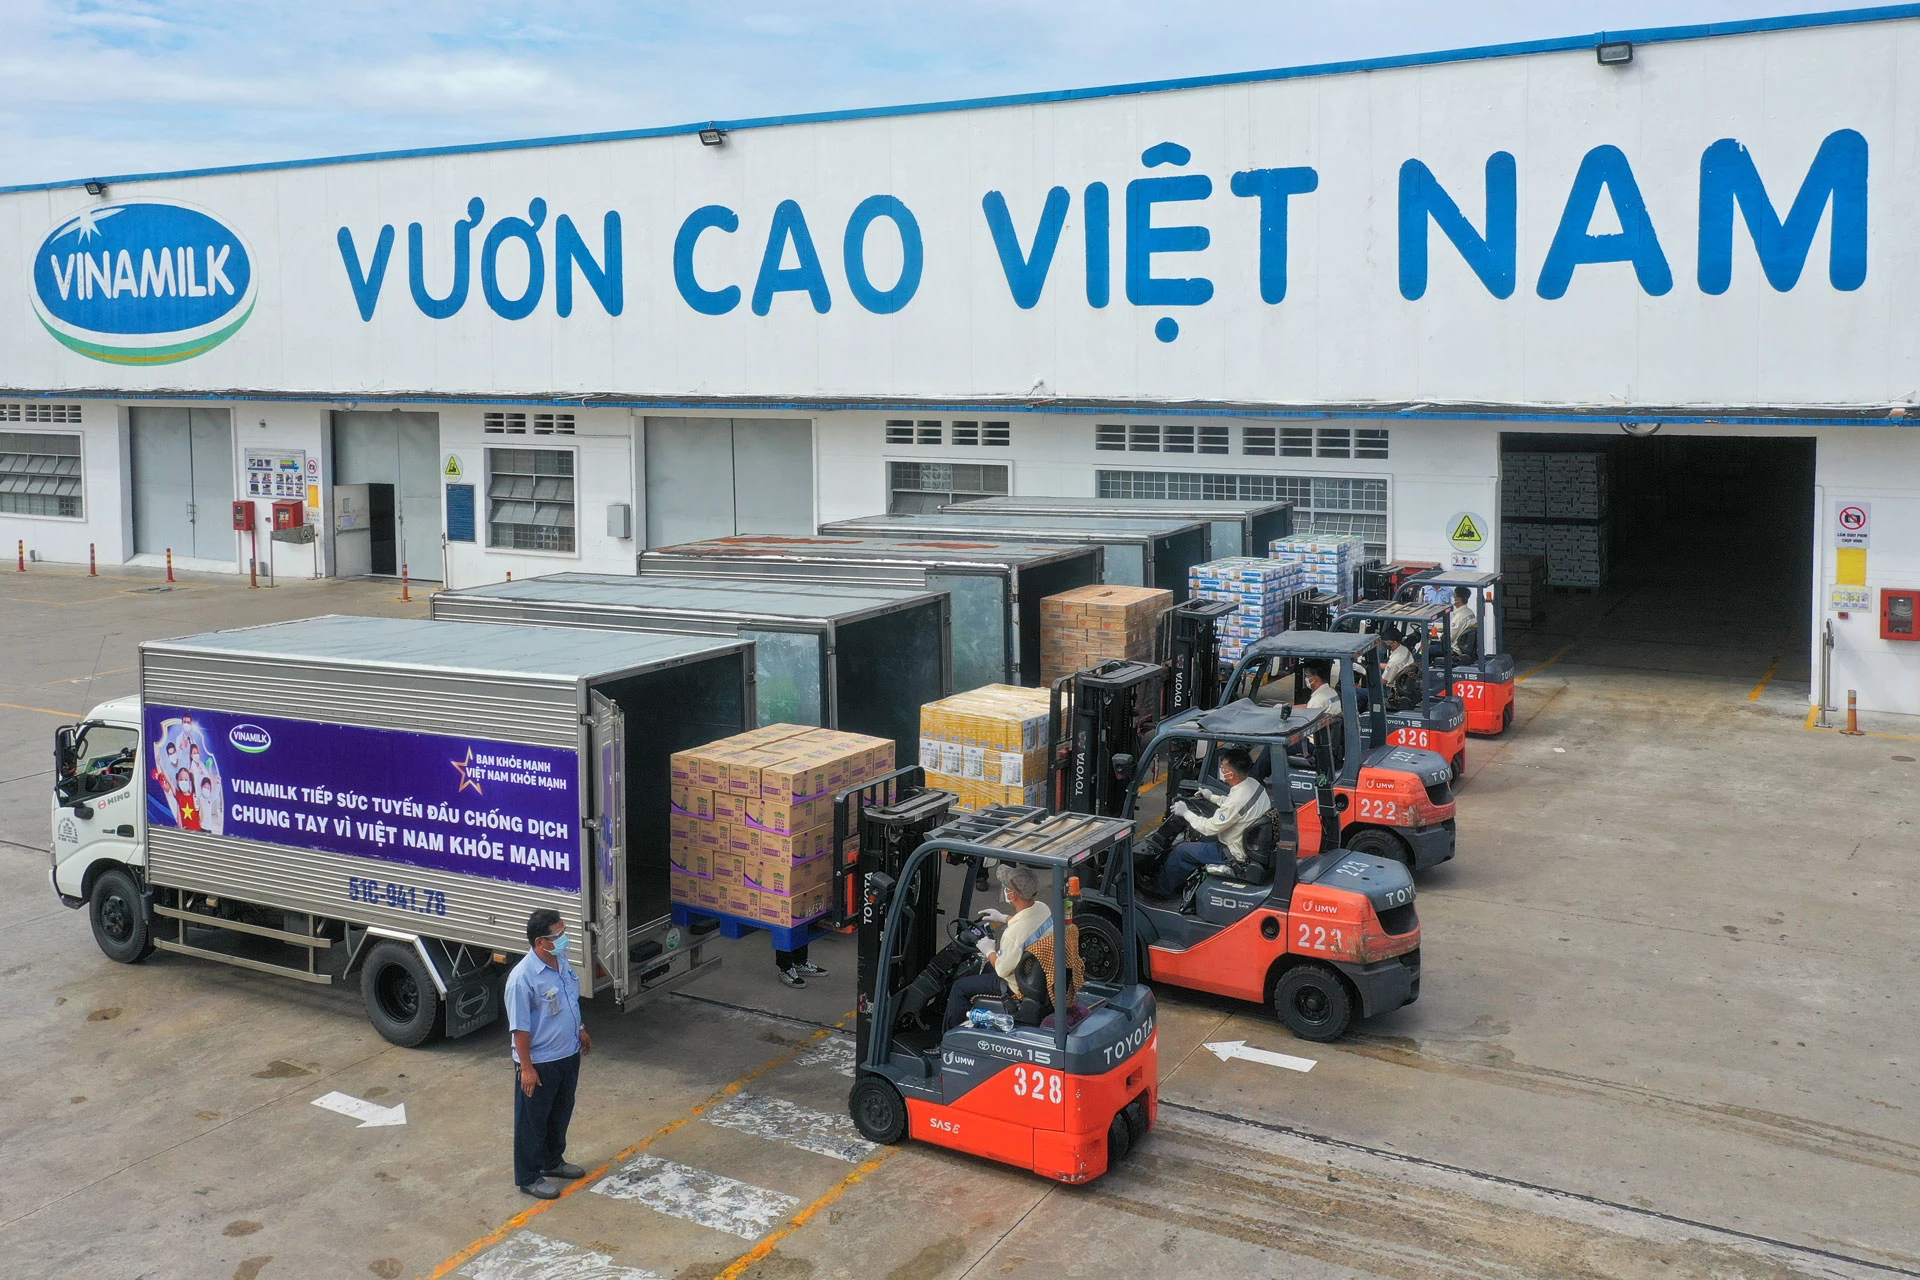 Các chuyến xe với lời chúc "Tuyến đầu khỏe mạnh, vì Việt Nam khỏe mạnh” của Vinamilk mang theo món quà sức khỏe đến với tuyến đầu